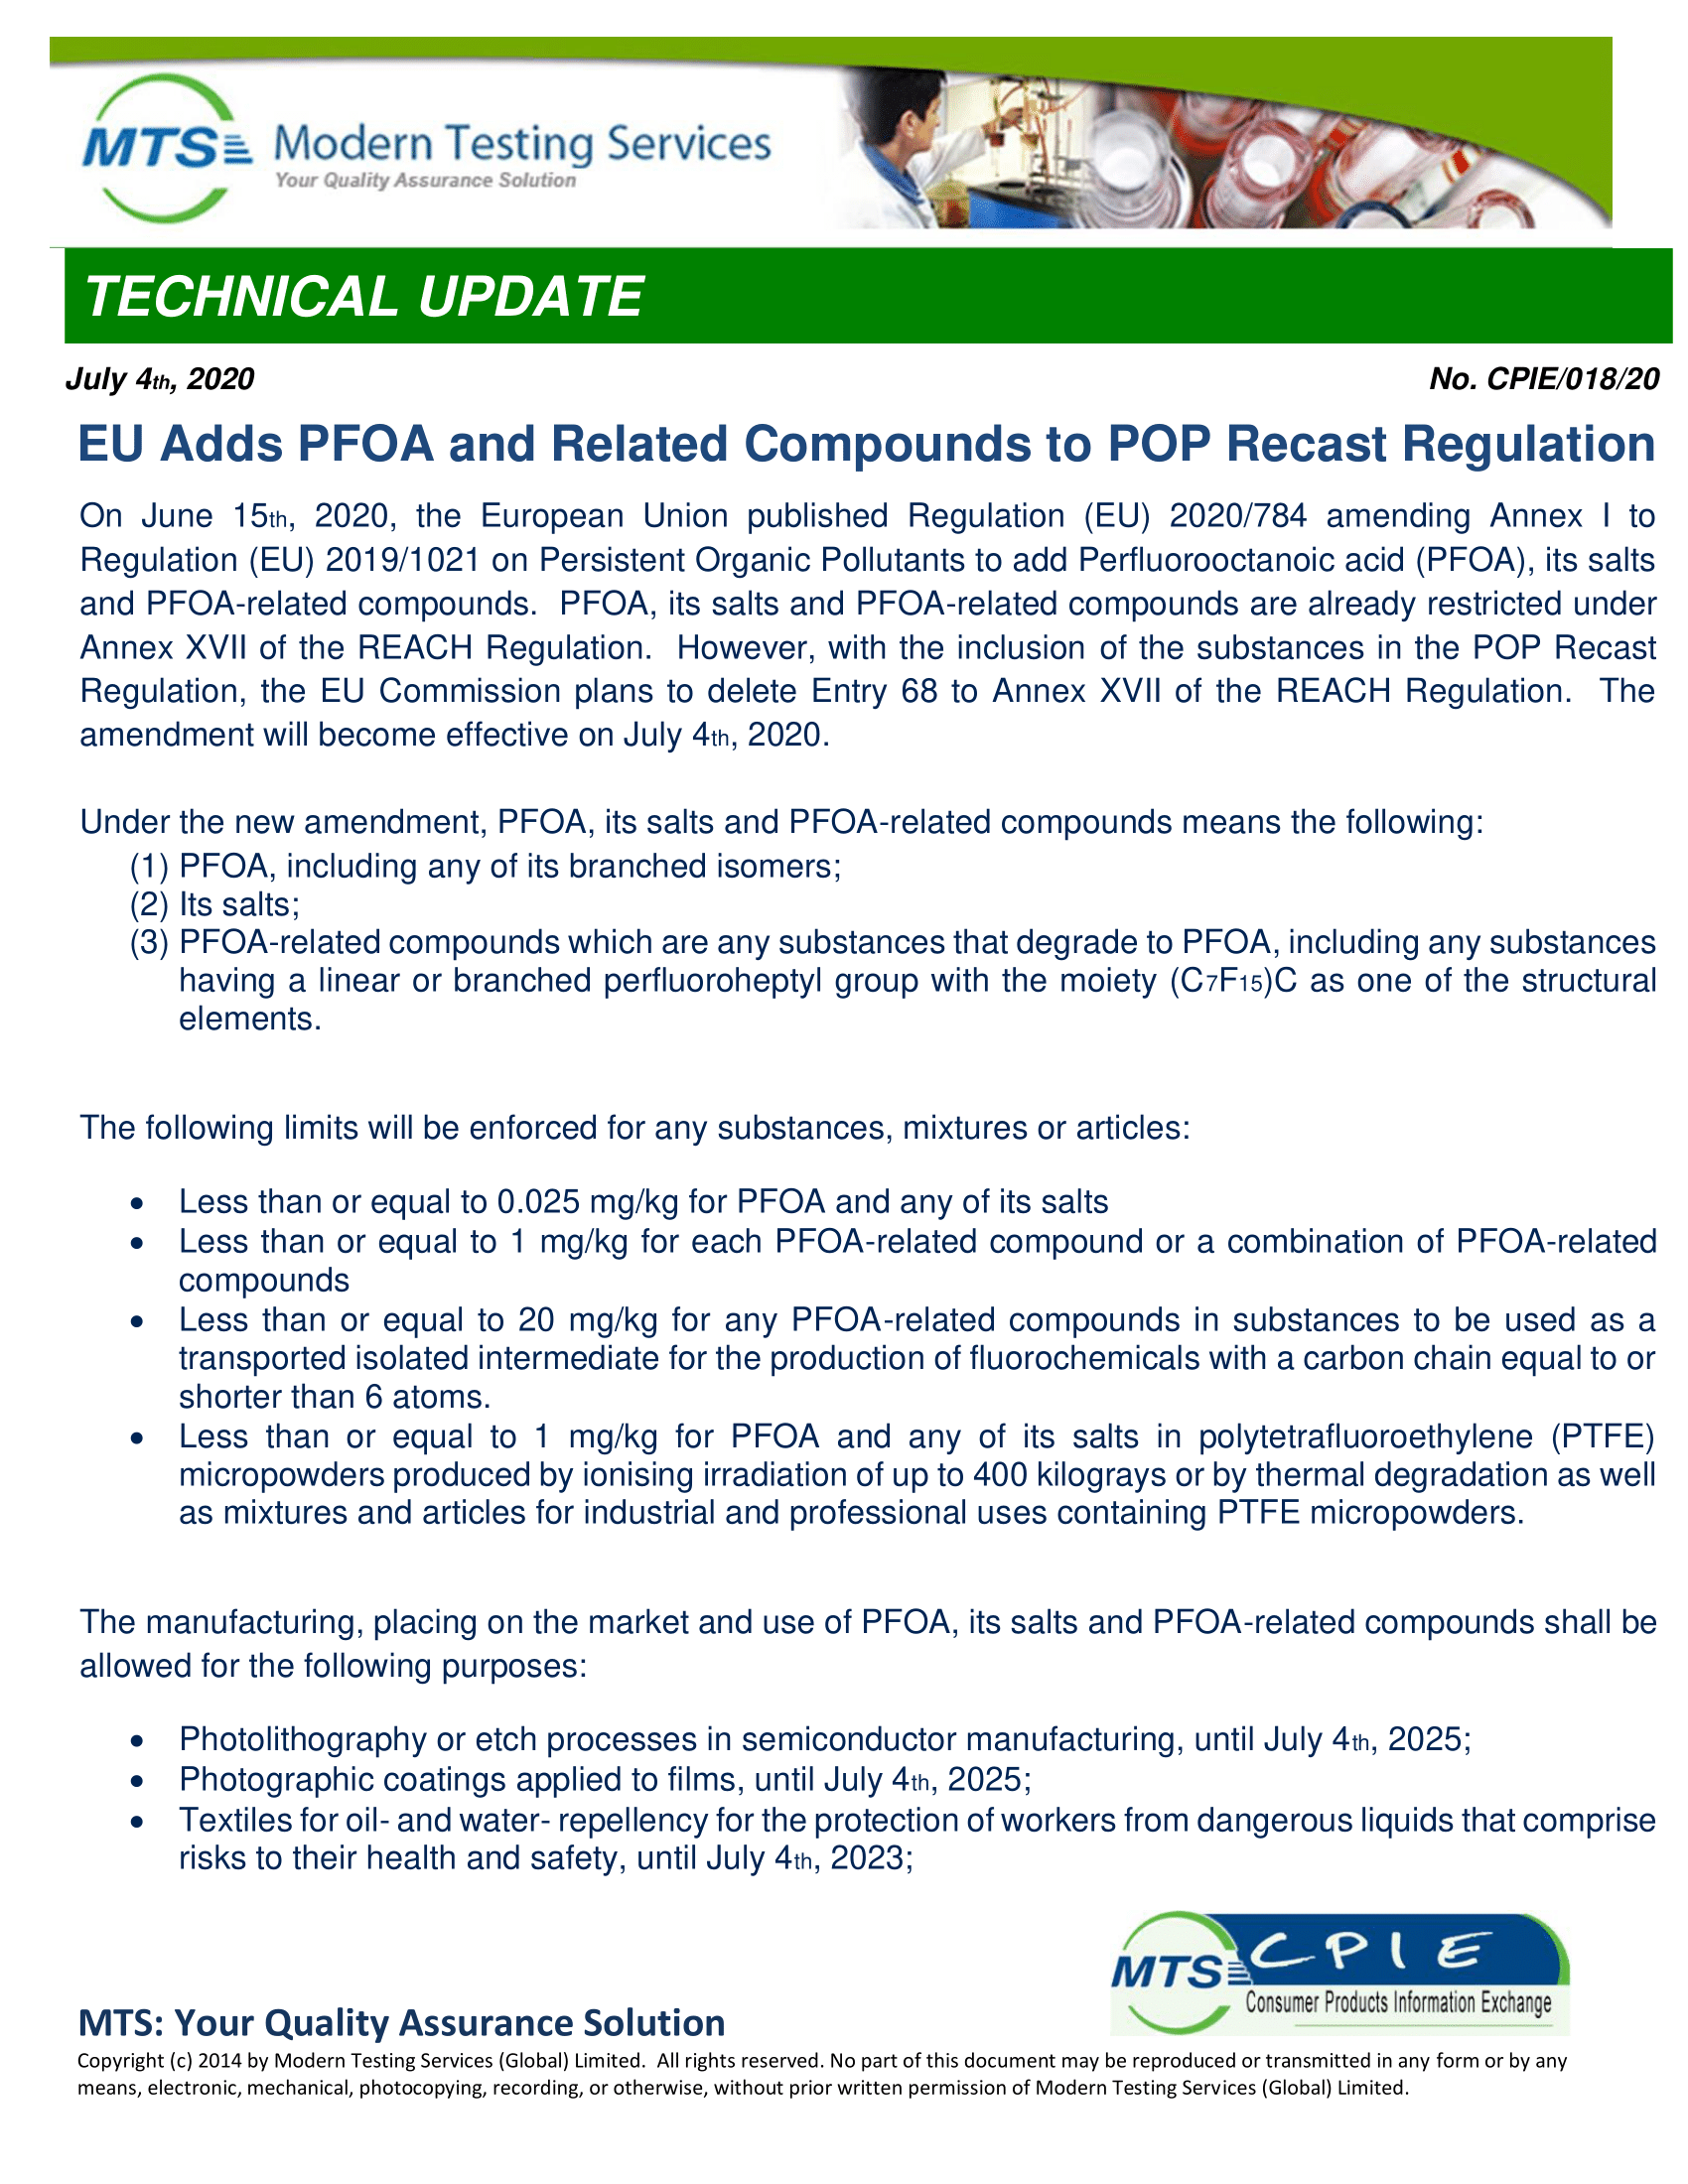 CPIE-018-20  EU Adds PFOA and Related Compounds to POP Recast Regulation 1